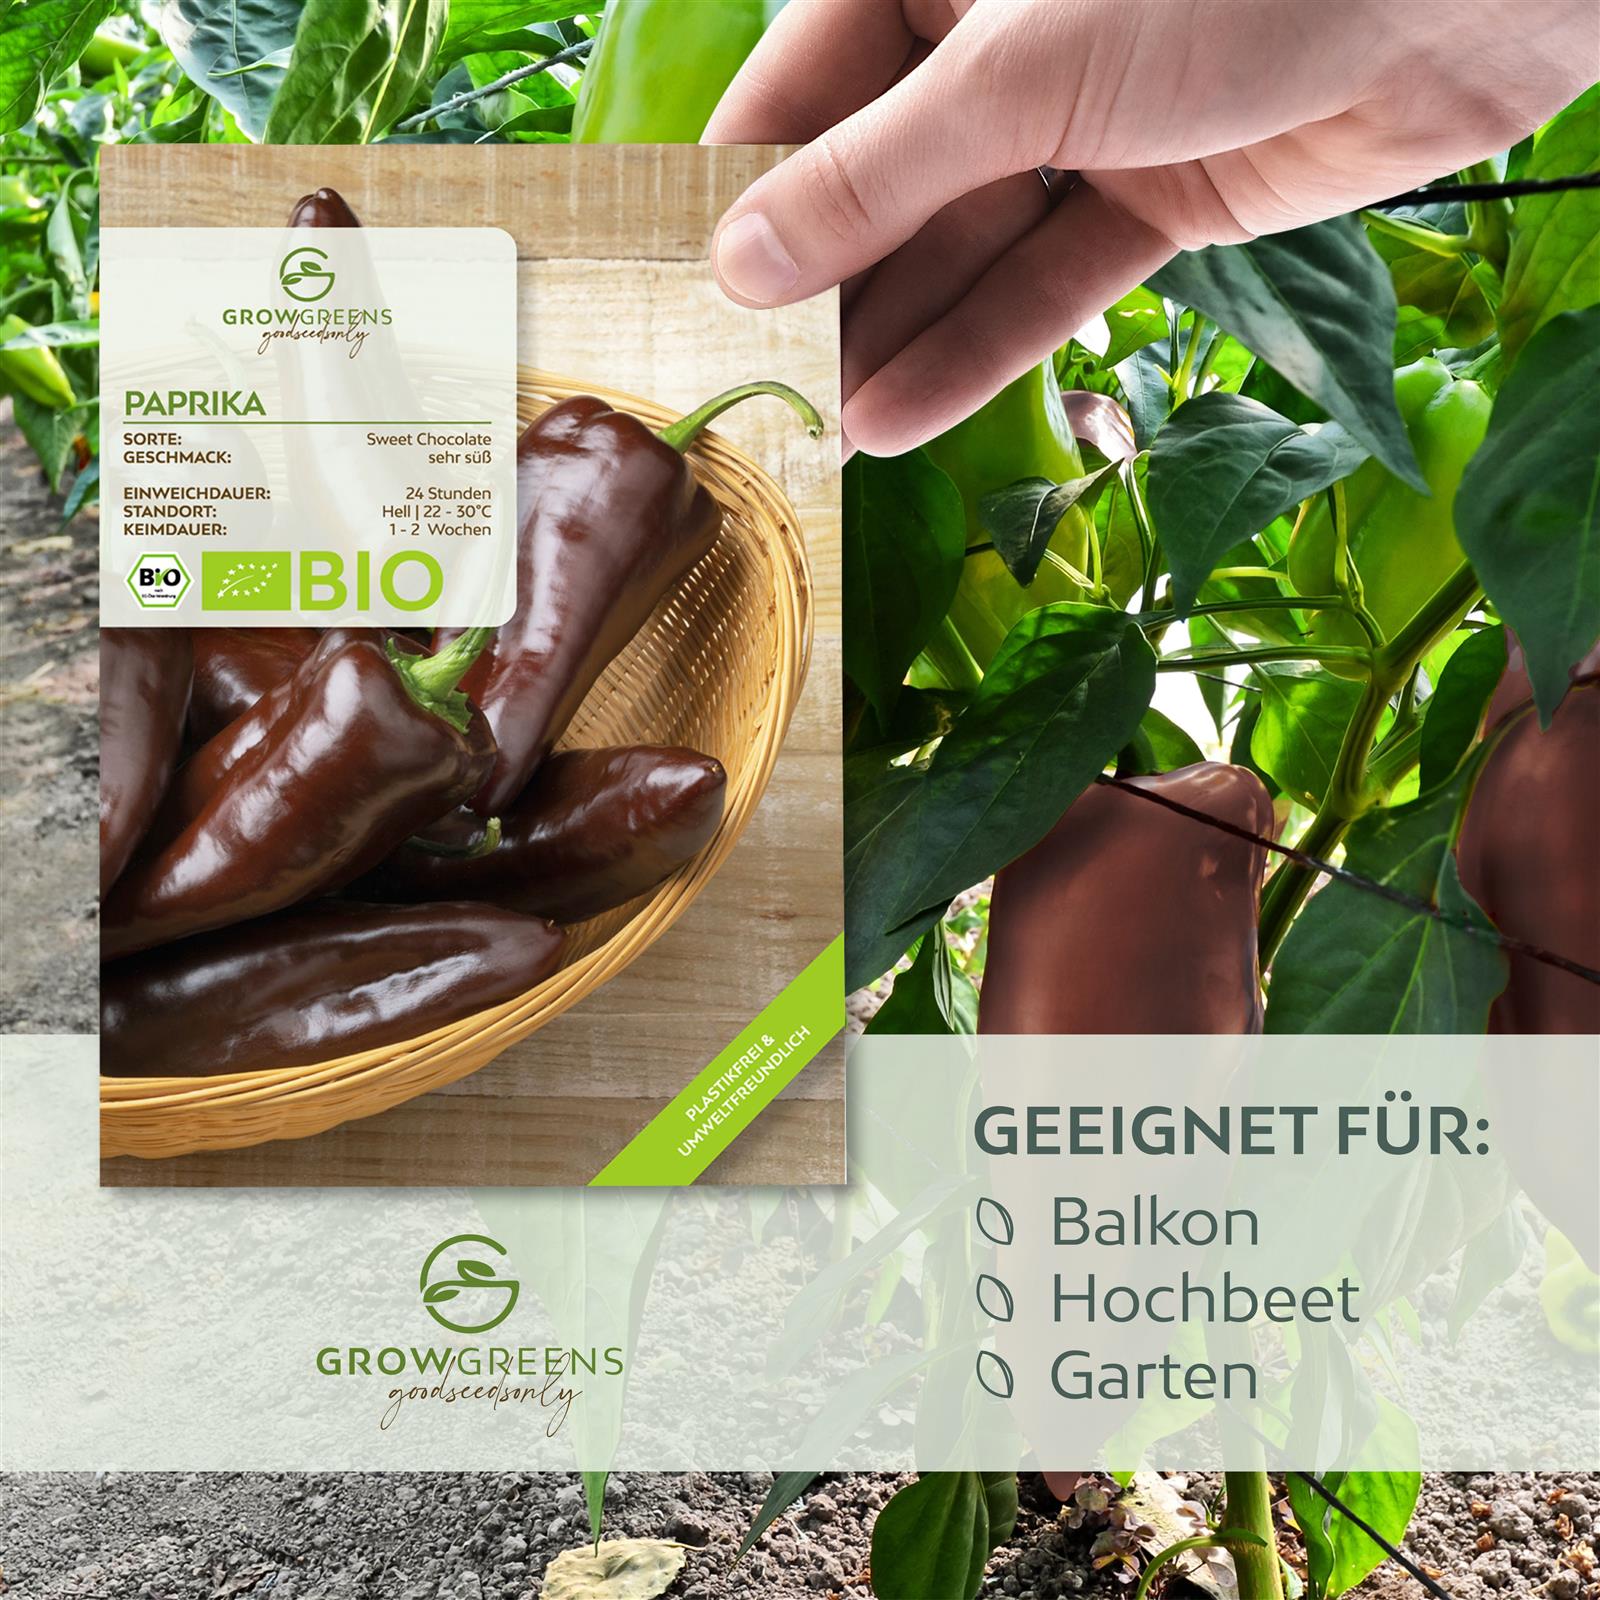 BIO Paprika Samen (Sweet Chocolate) - Paprika Saatgut aus biologischem Anbau (10 Korn)